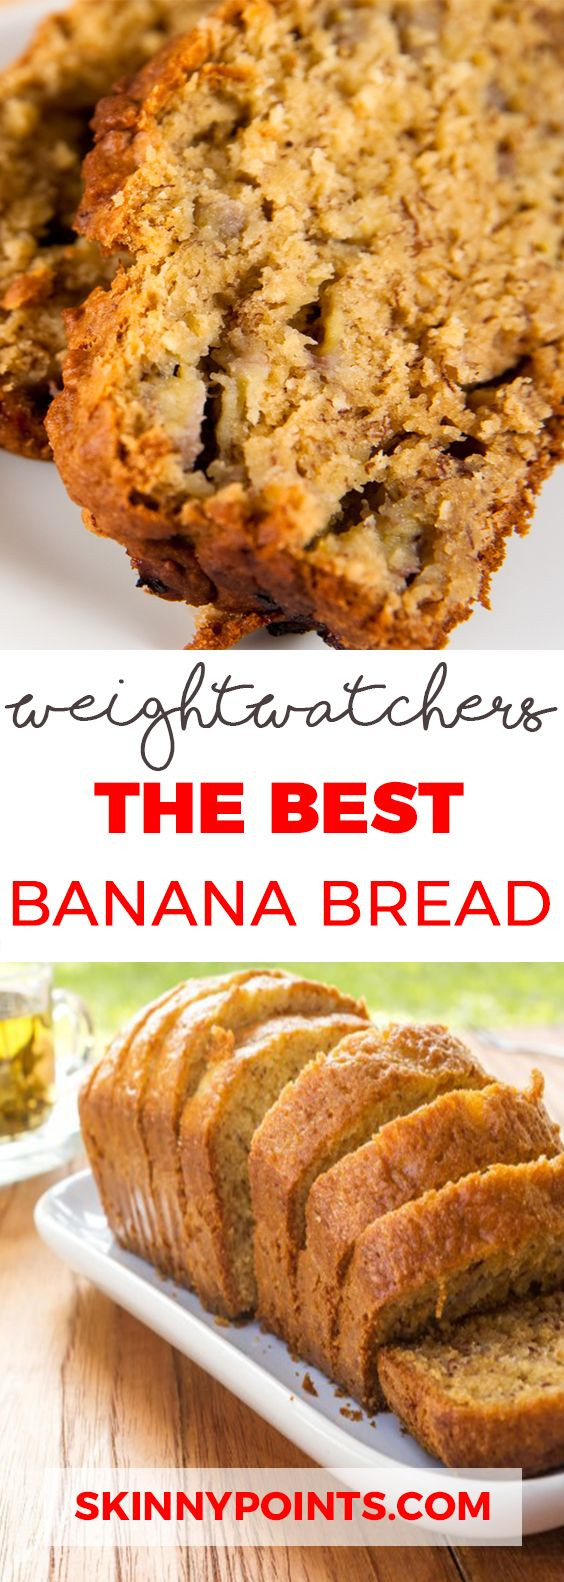 Weight Watchers Desserts Recipes
 25 Best Weight Watchers Desserts Recipes with SmartPoints